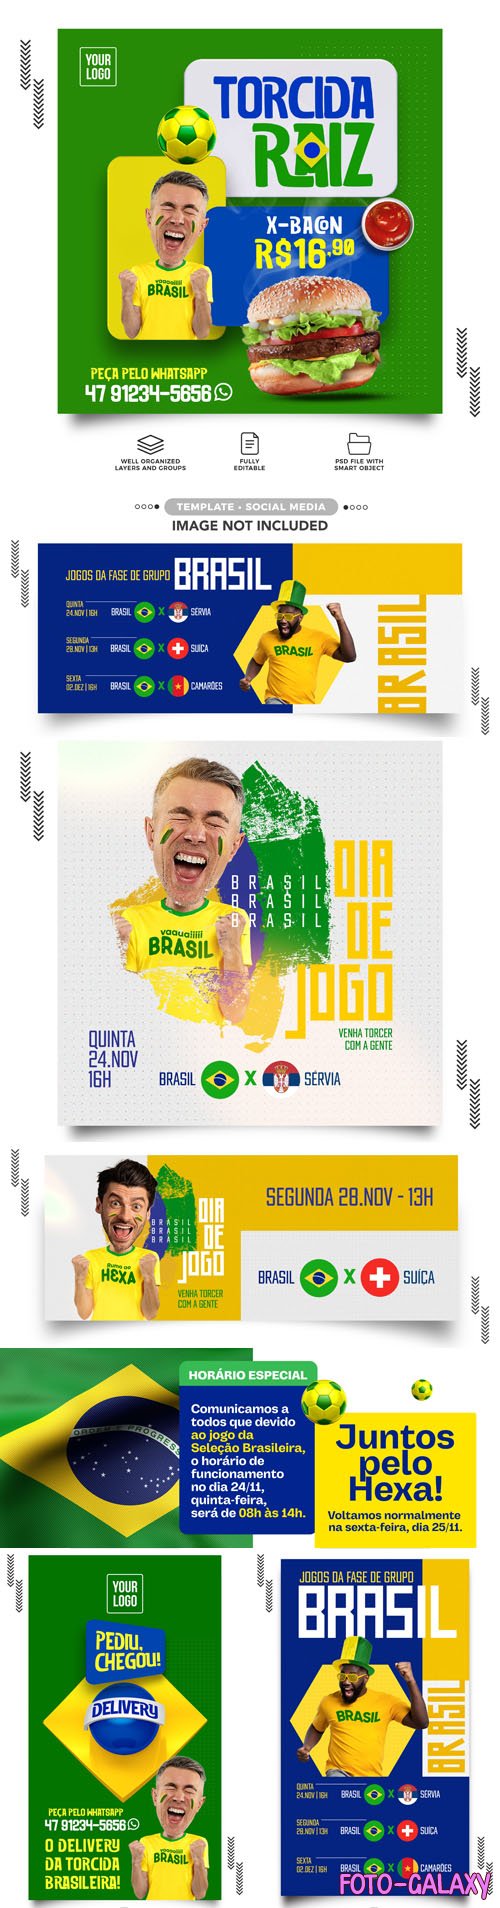 World Cup - Qatar 2022 - The Brazil Team - 20+ Social Media PSD Templates